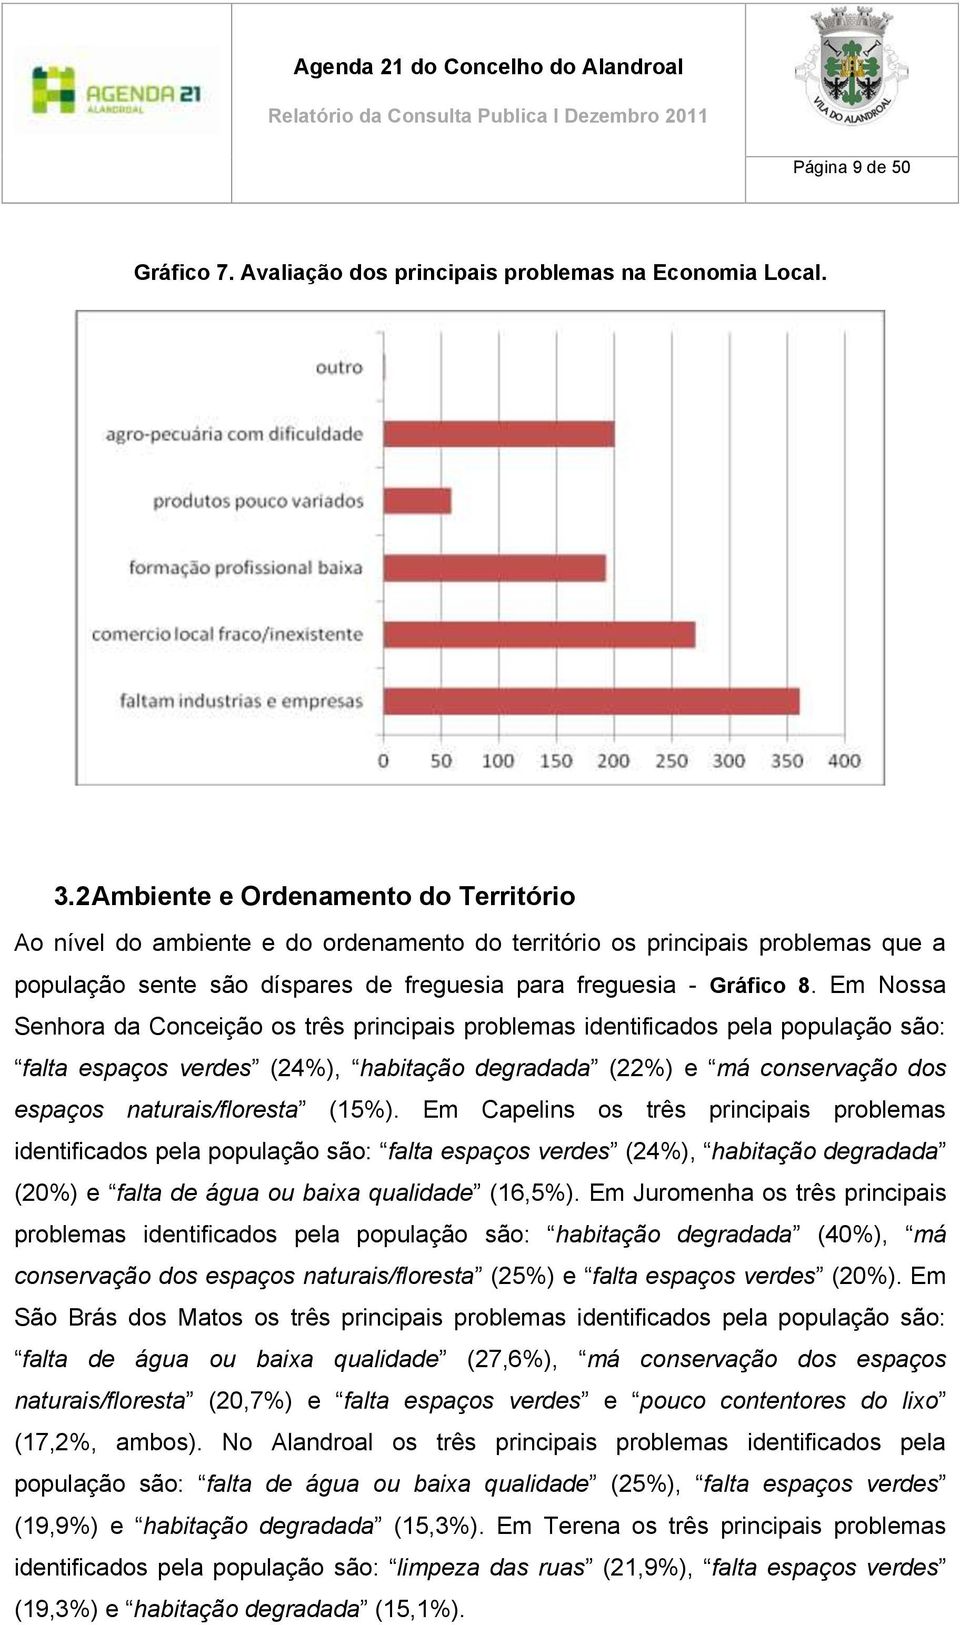 Em Nossa Senhora da Conceição os três principais problemas identificados pela população são: falta espaços verdes (24%), habitação degradada (22%) e má conservação dos espaços naturais/floresta (15%).